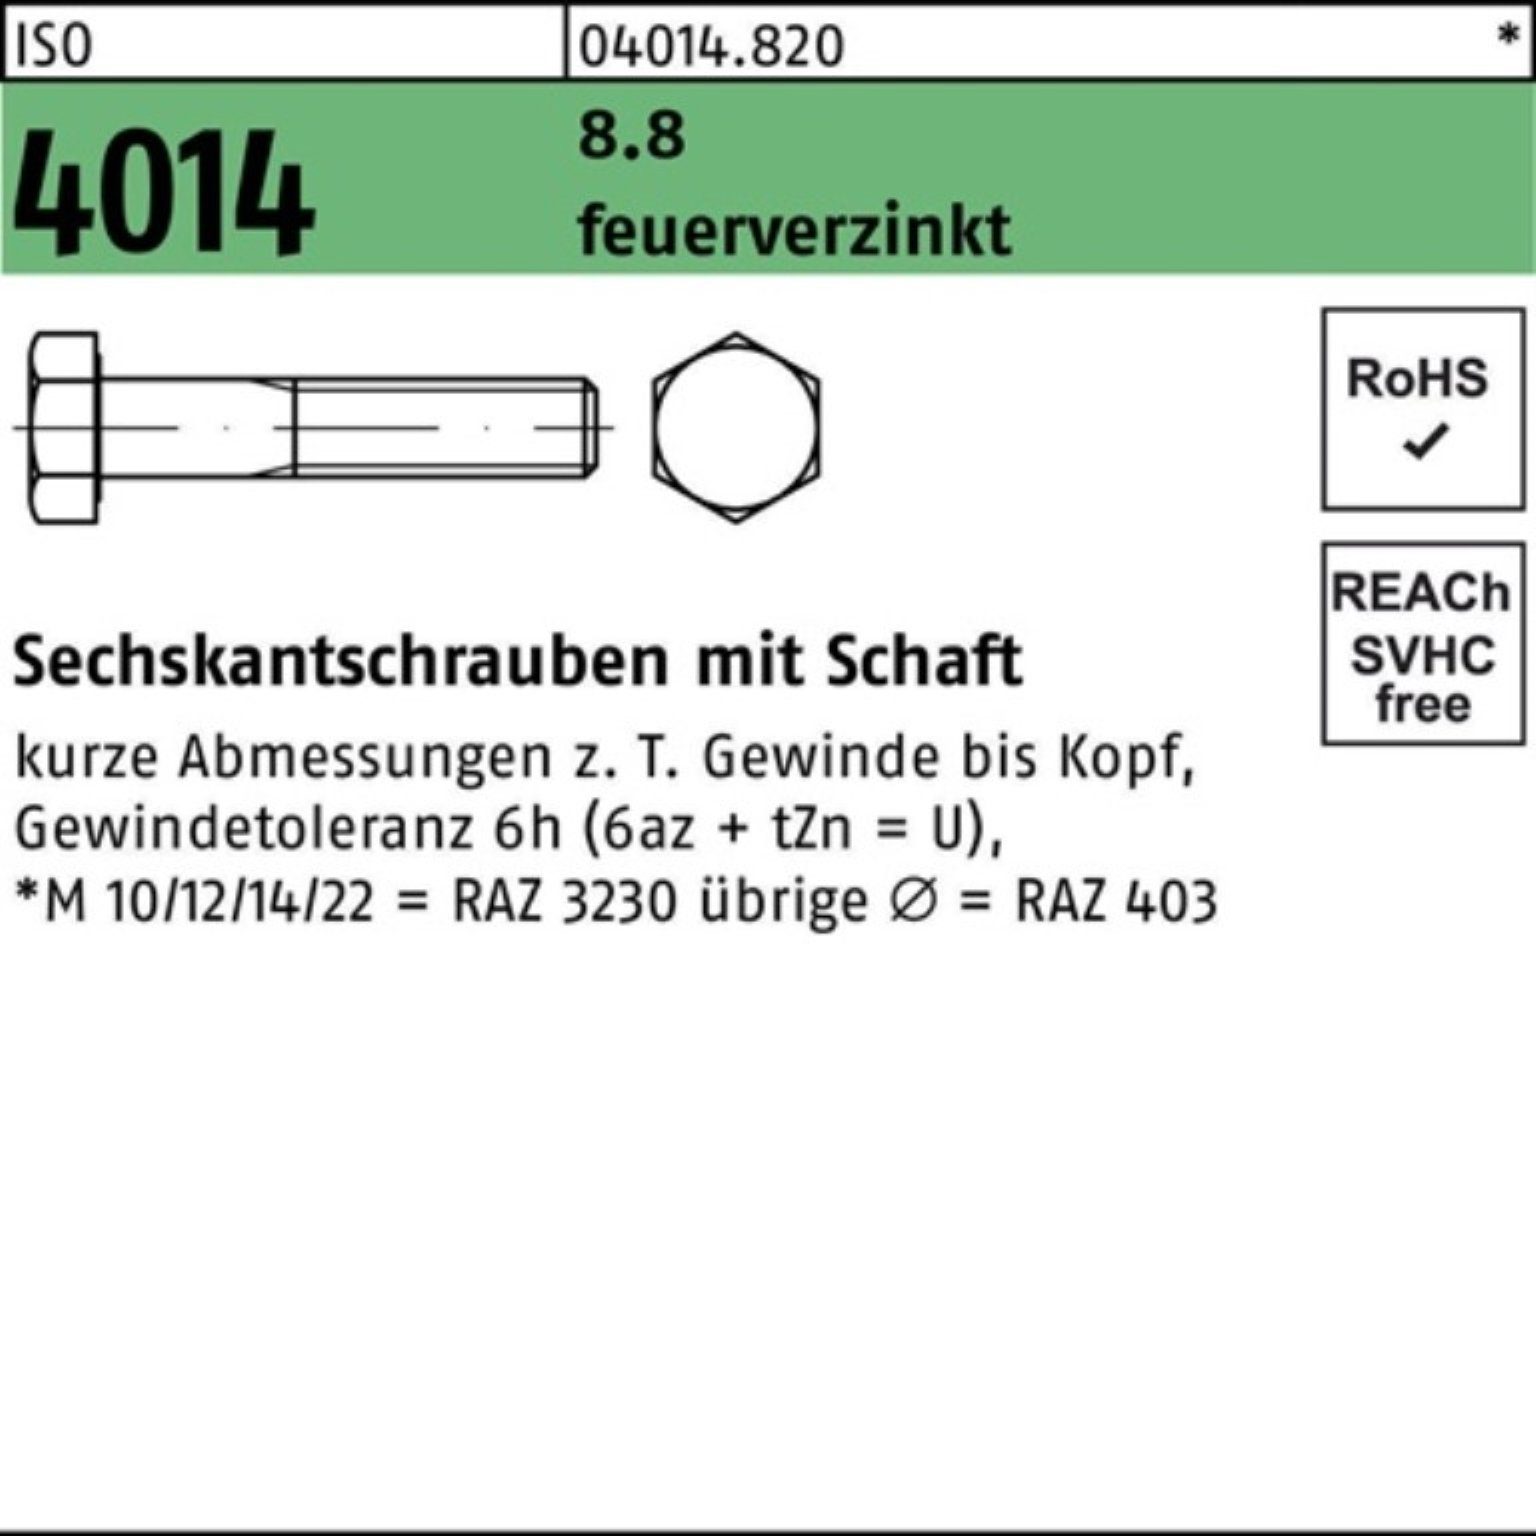 Schaft Sechskantschraube 180 Bufab Pack 8.8 M24x 100er Sechskantschraube 4014 ISO feuerverz. 1